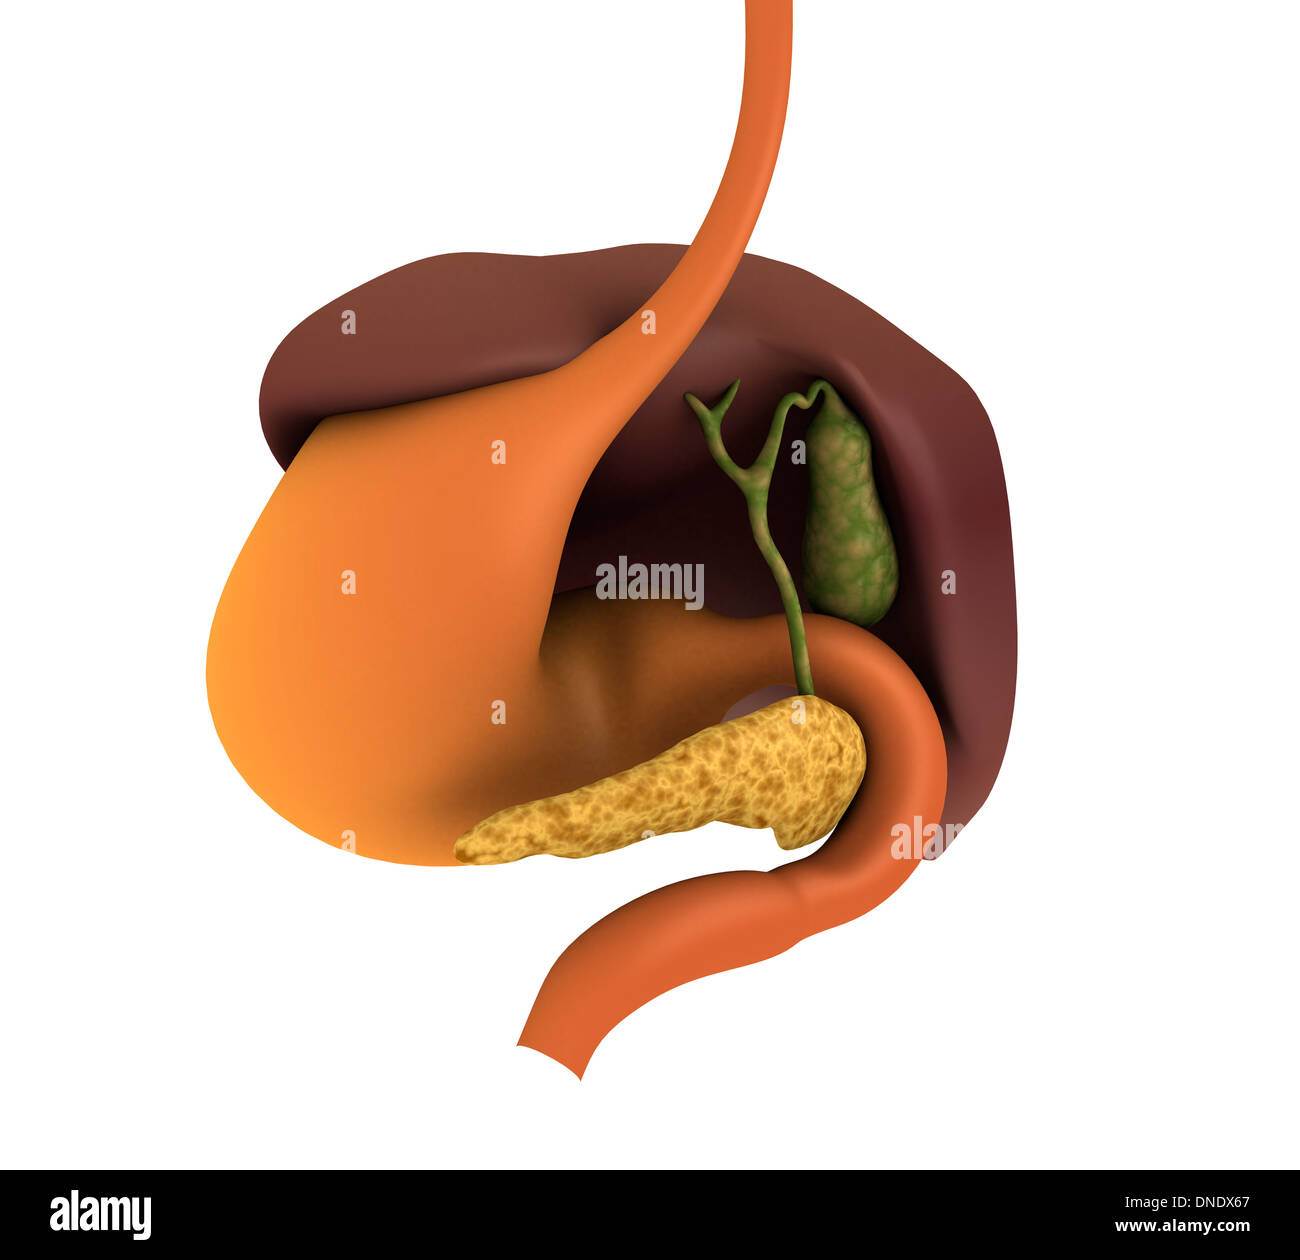 Immagine concettuale dell apparato digestivo umano mostra cistifellea, pancreas, dello stomaco e del fegato. Foto Stock